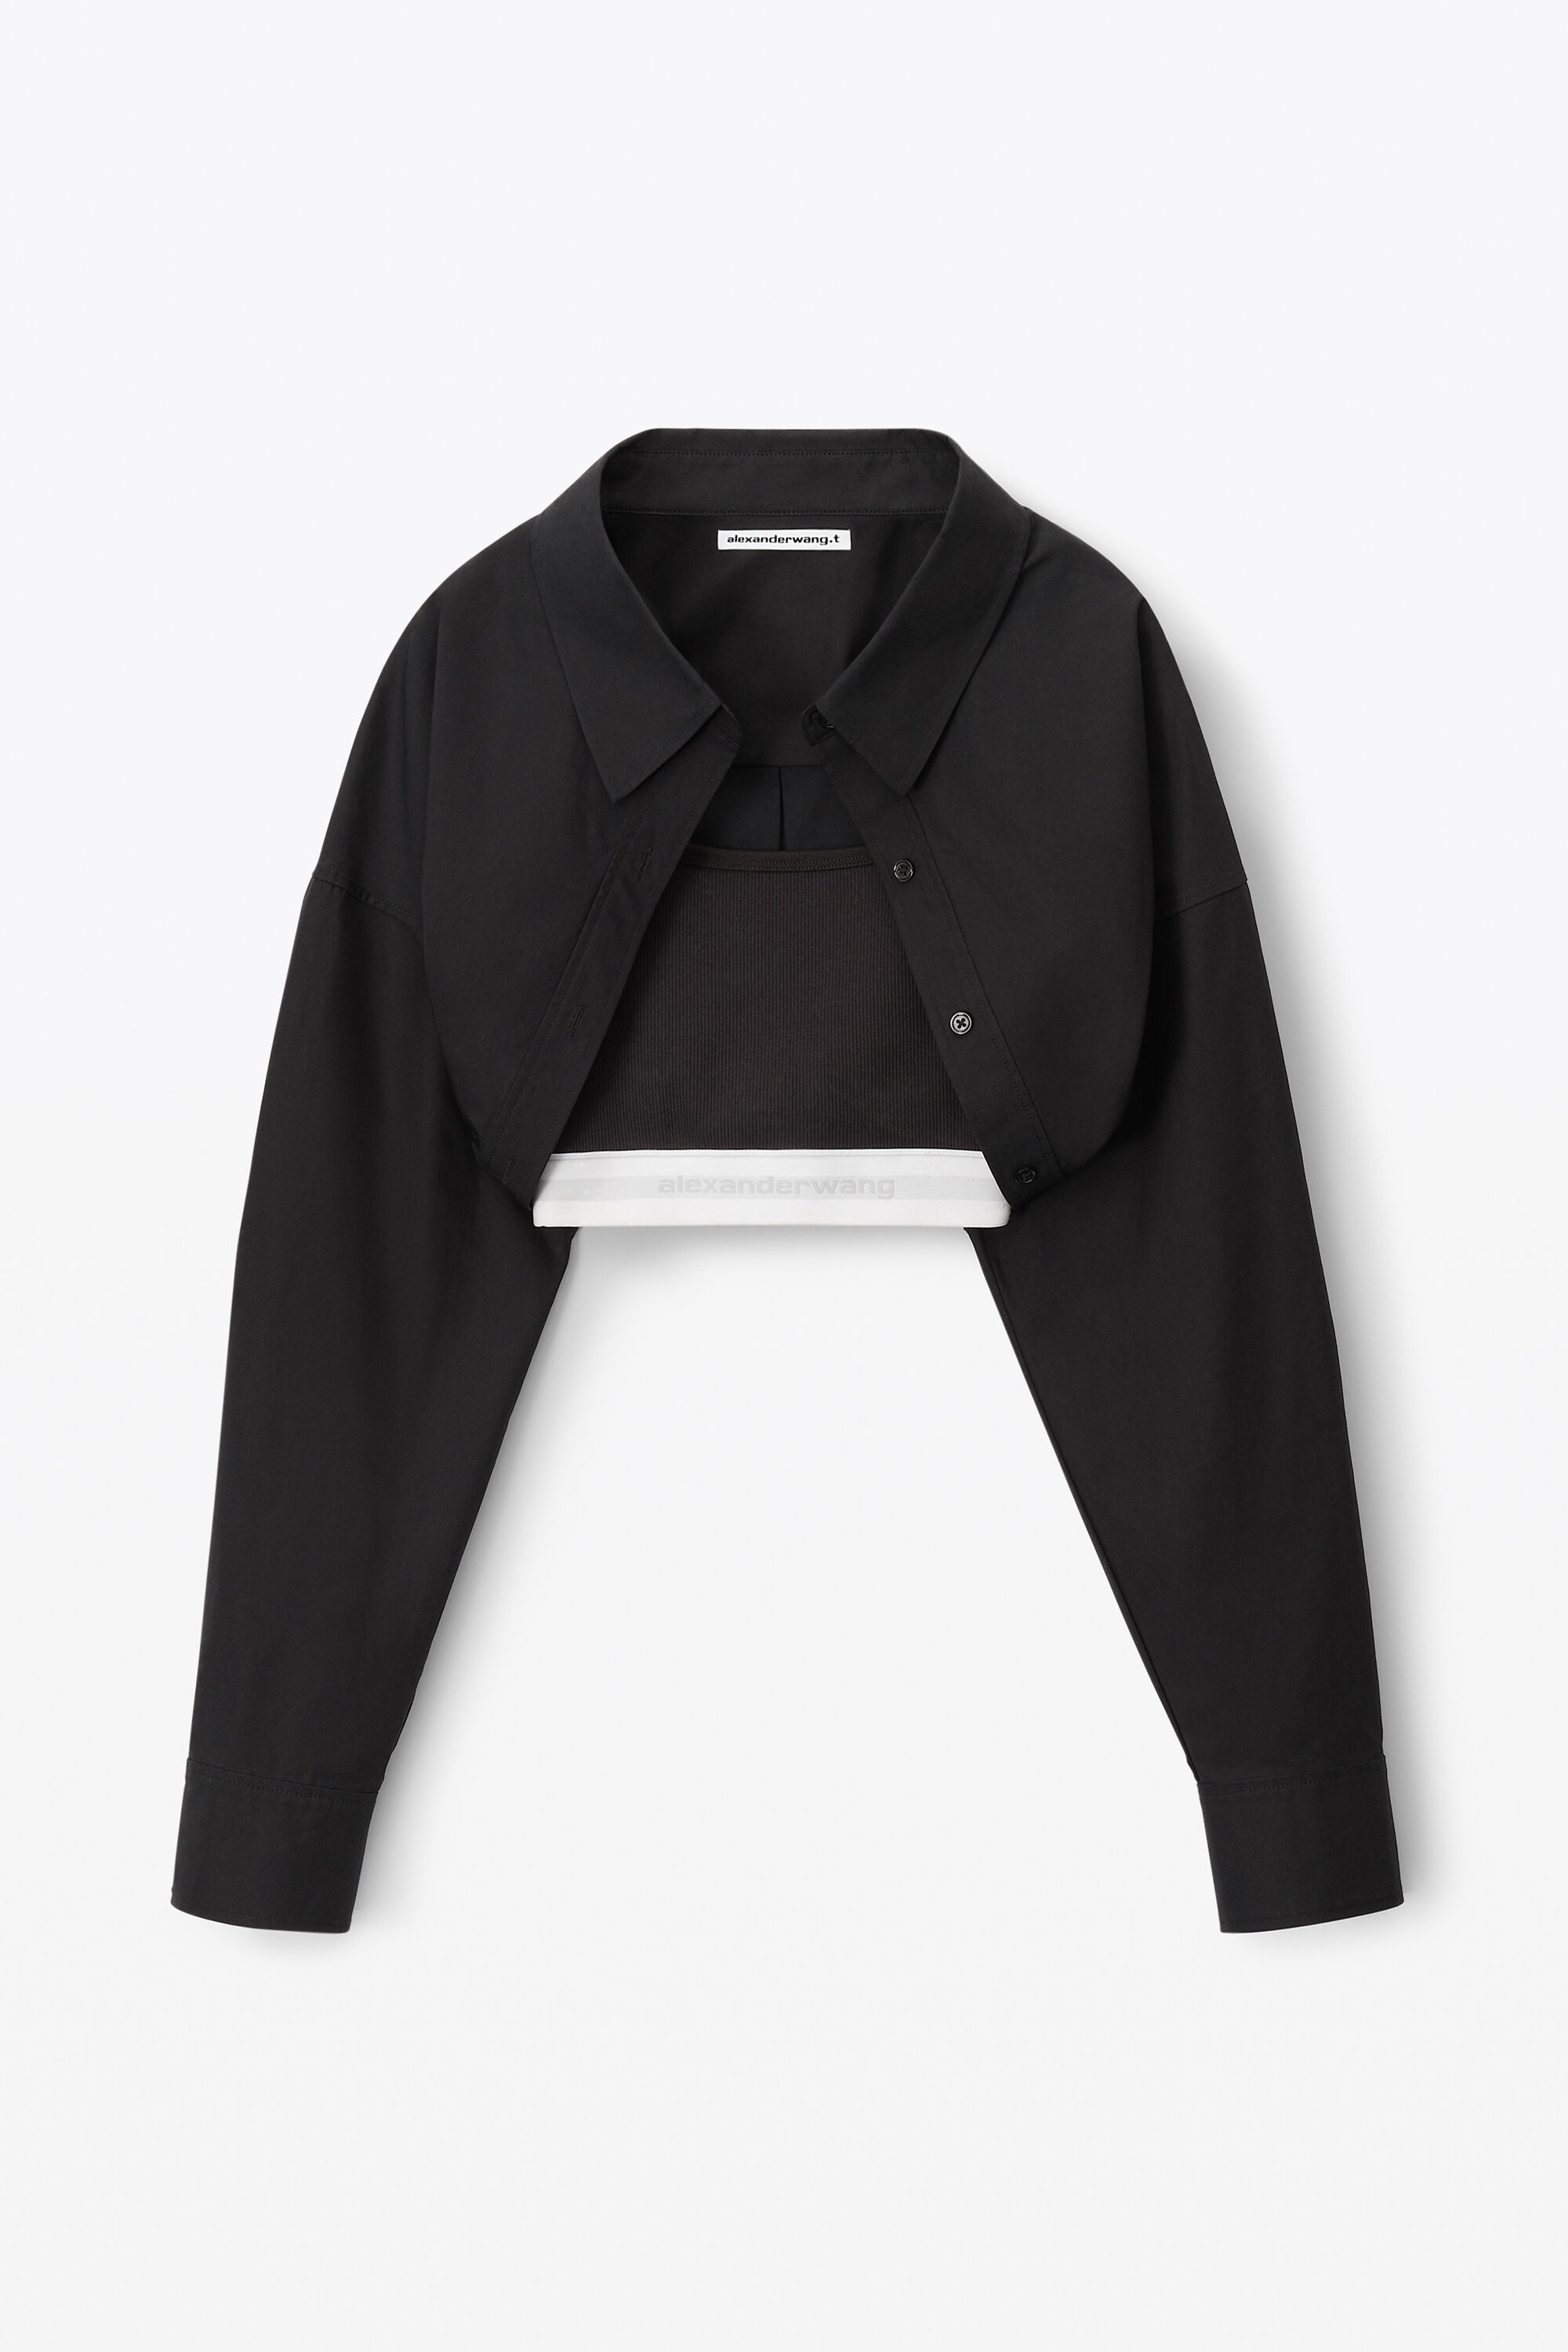 Calvin Klein Black Fringe Trim Bolero Jacket - Elements Unleashed